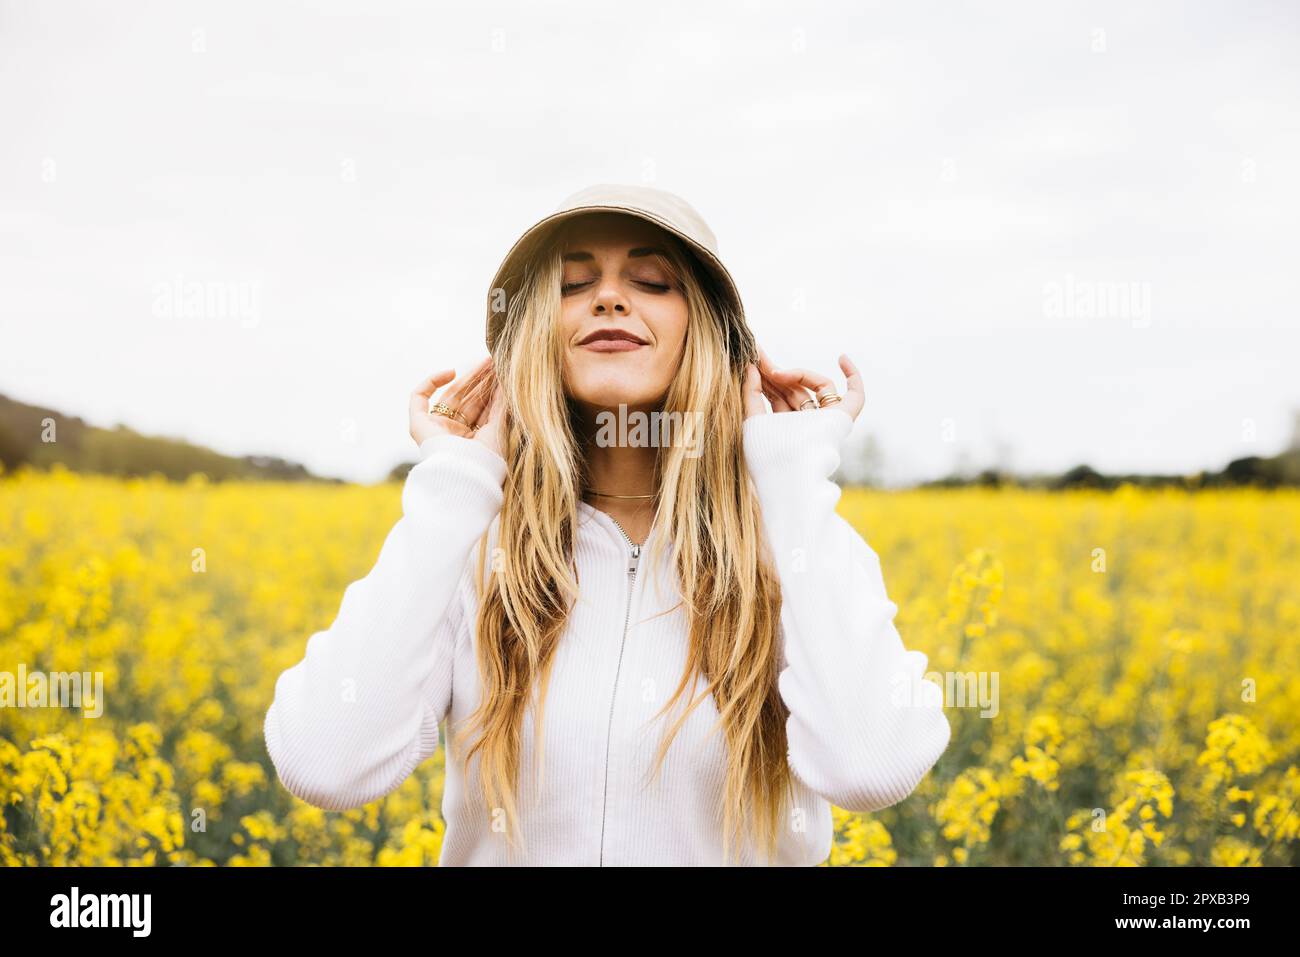 Belle jeune blonde gaie femme, portant un chapeau, pose au milieu d'un champ de fleurs de colza jaune Banque D'Images